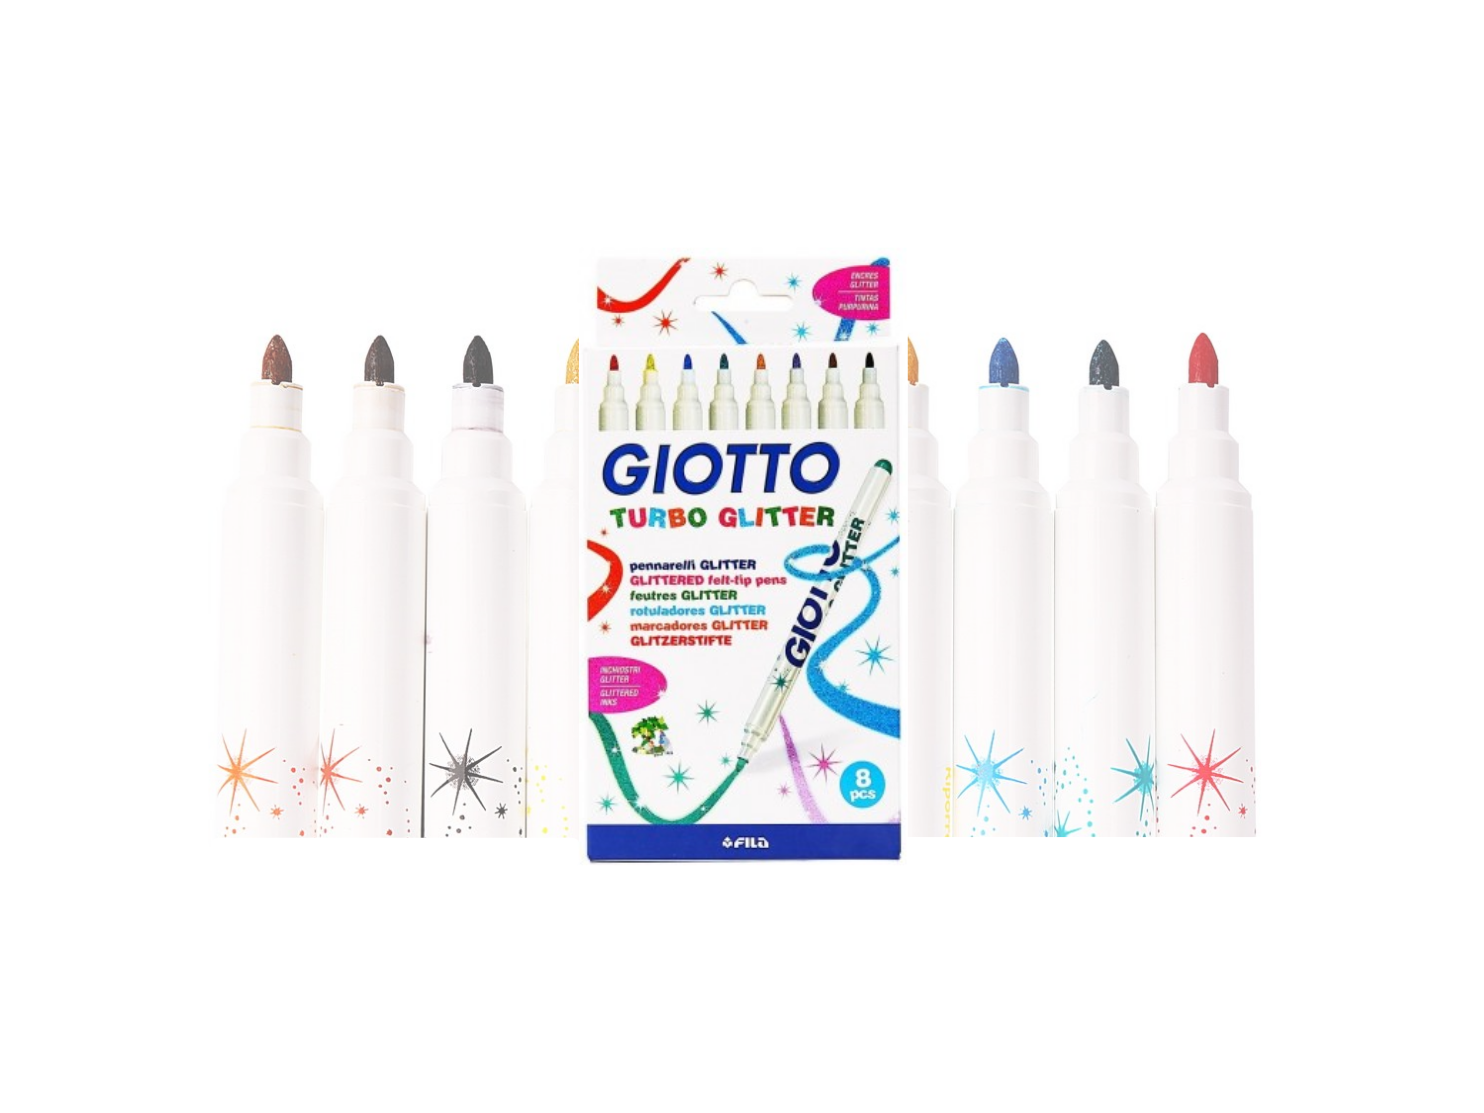 Giotto Turbo Glitter Maxi - Fila United Kingdom